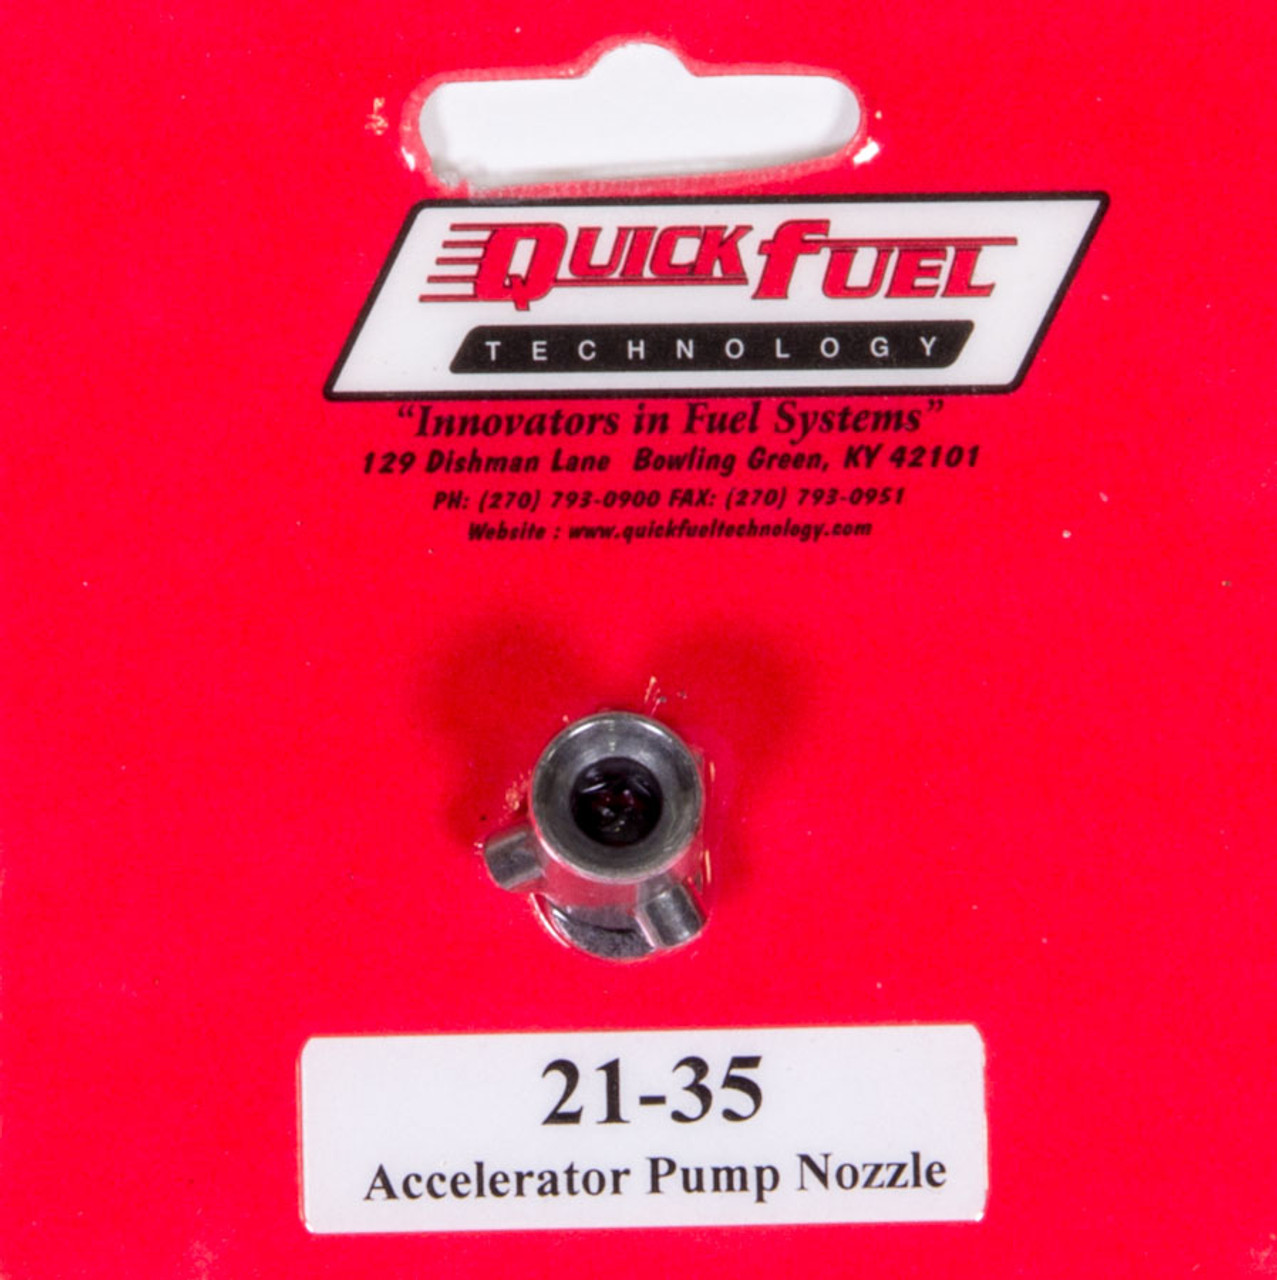 Quick Fuel Accelerator Pump Nozzle 0.035 - QFT21-35